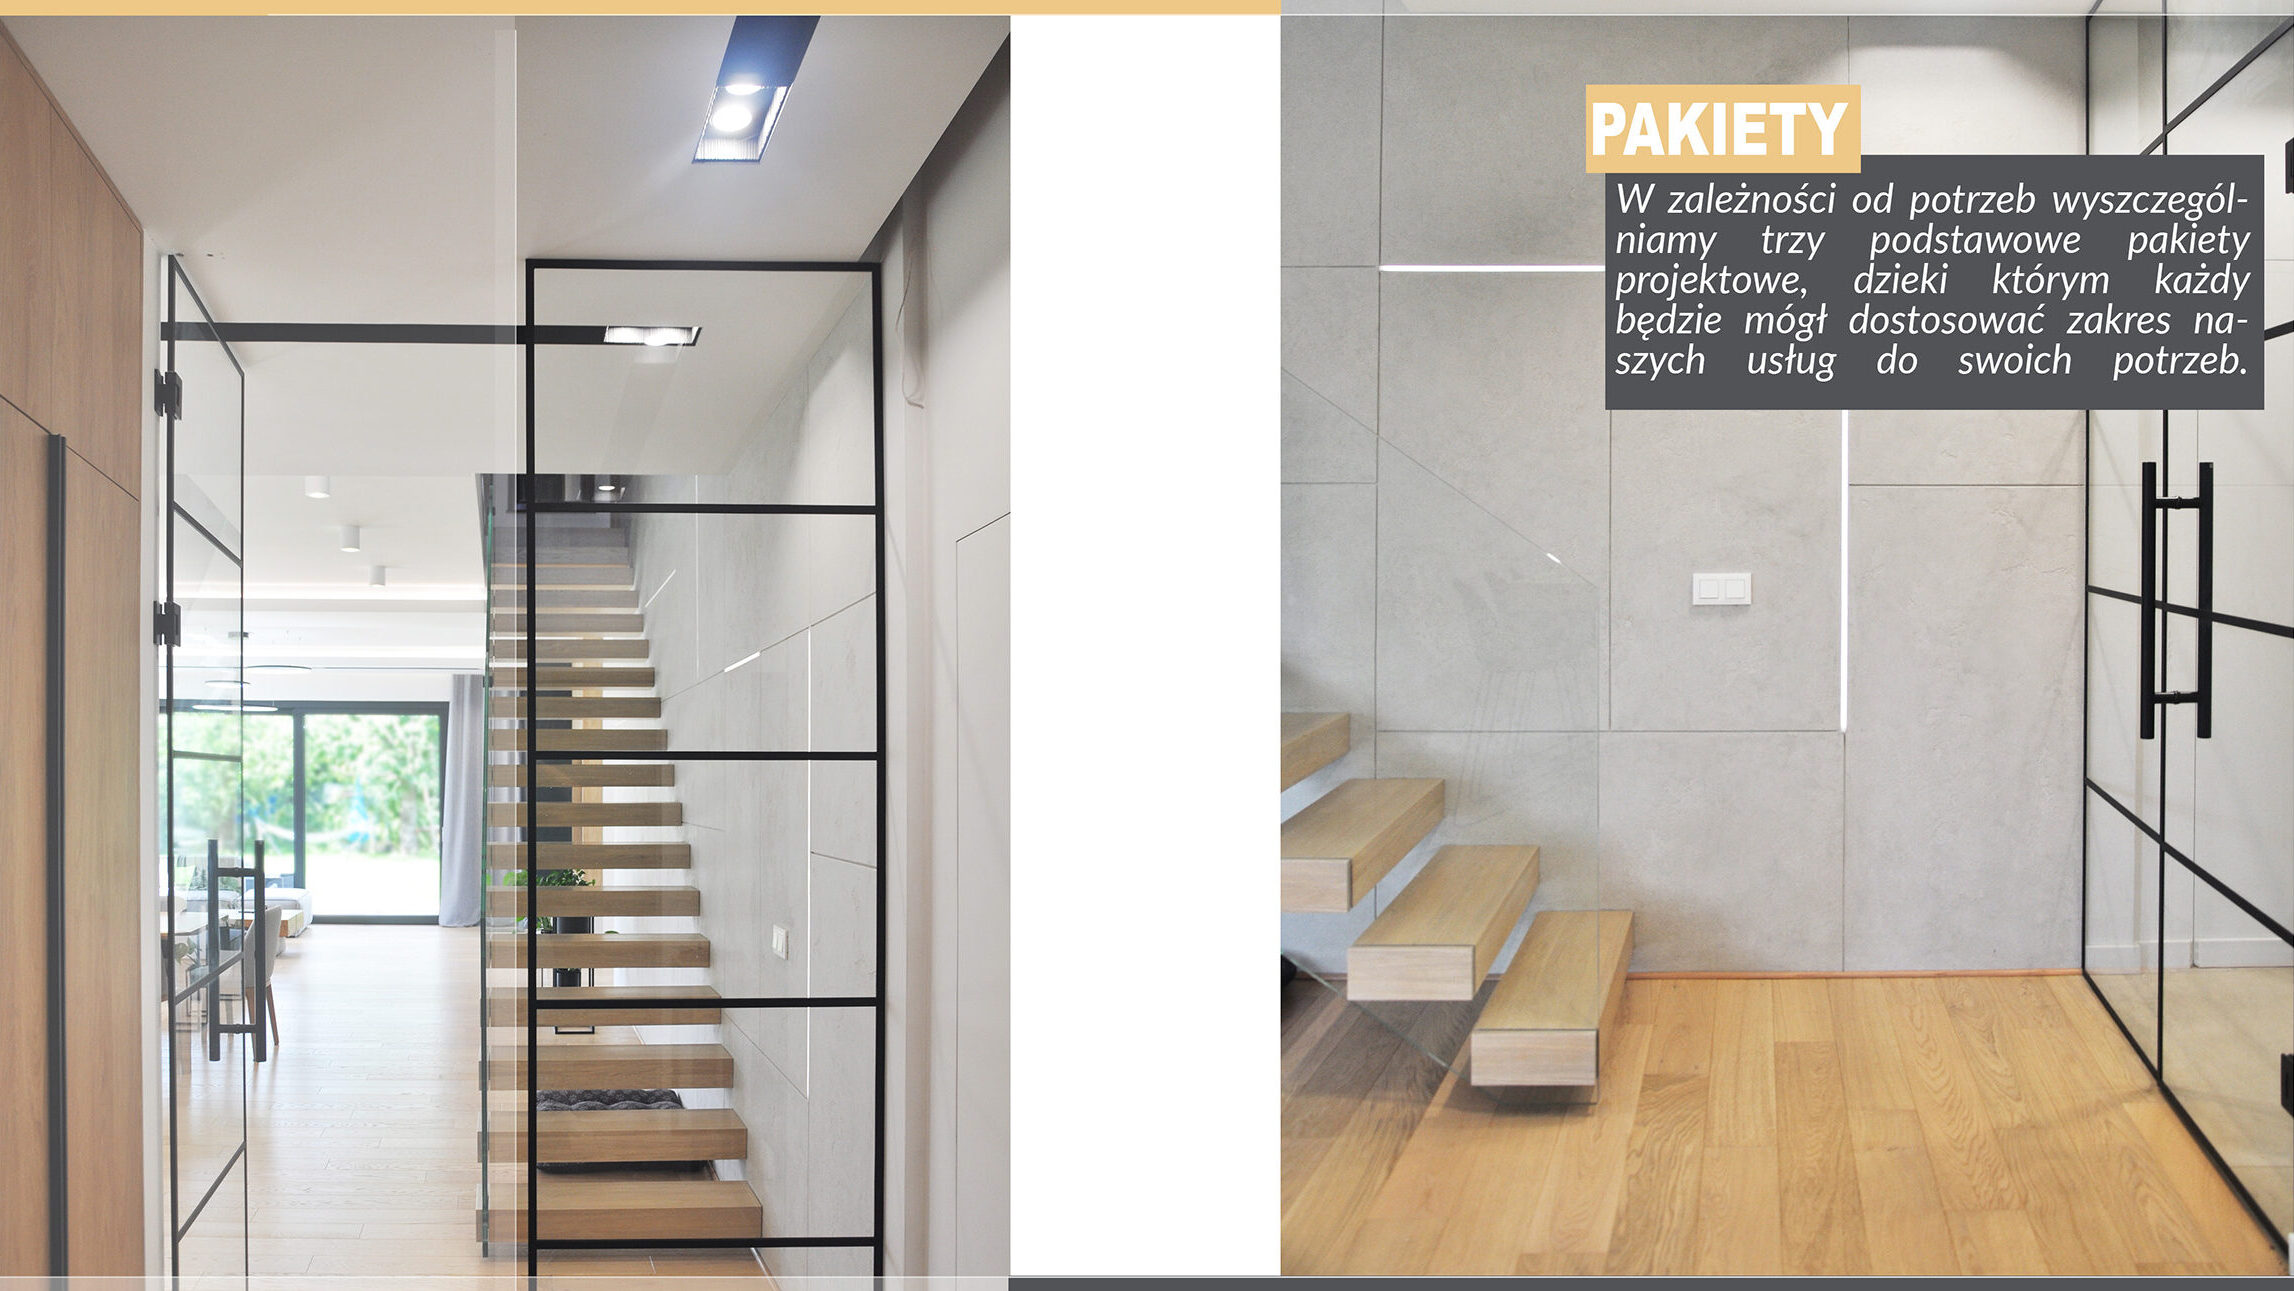 Biuro projektowania wnętrz Wrocław pokazuje na grafice dwie klatki schodowe oraz opisuje pakiety zakresu działalności